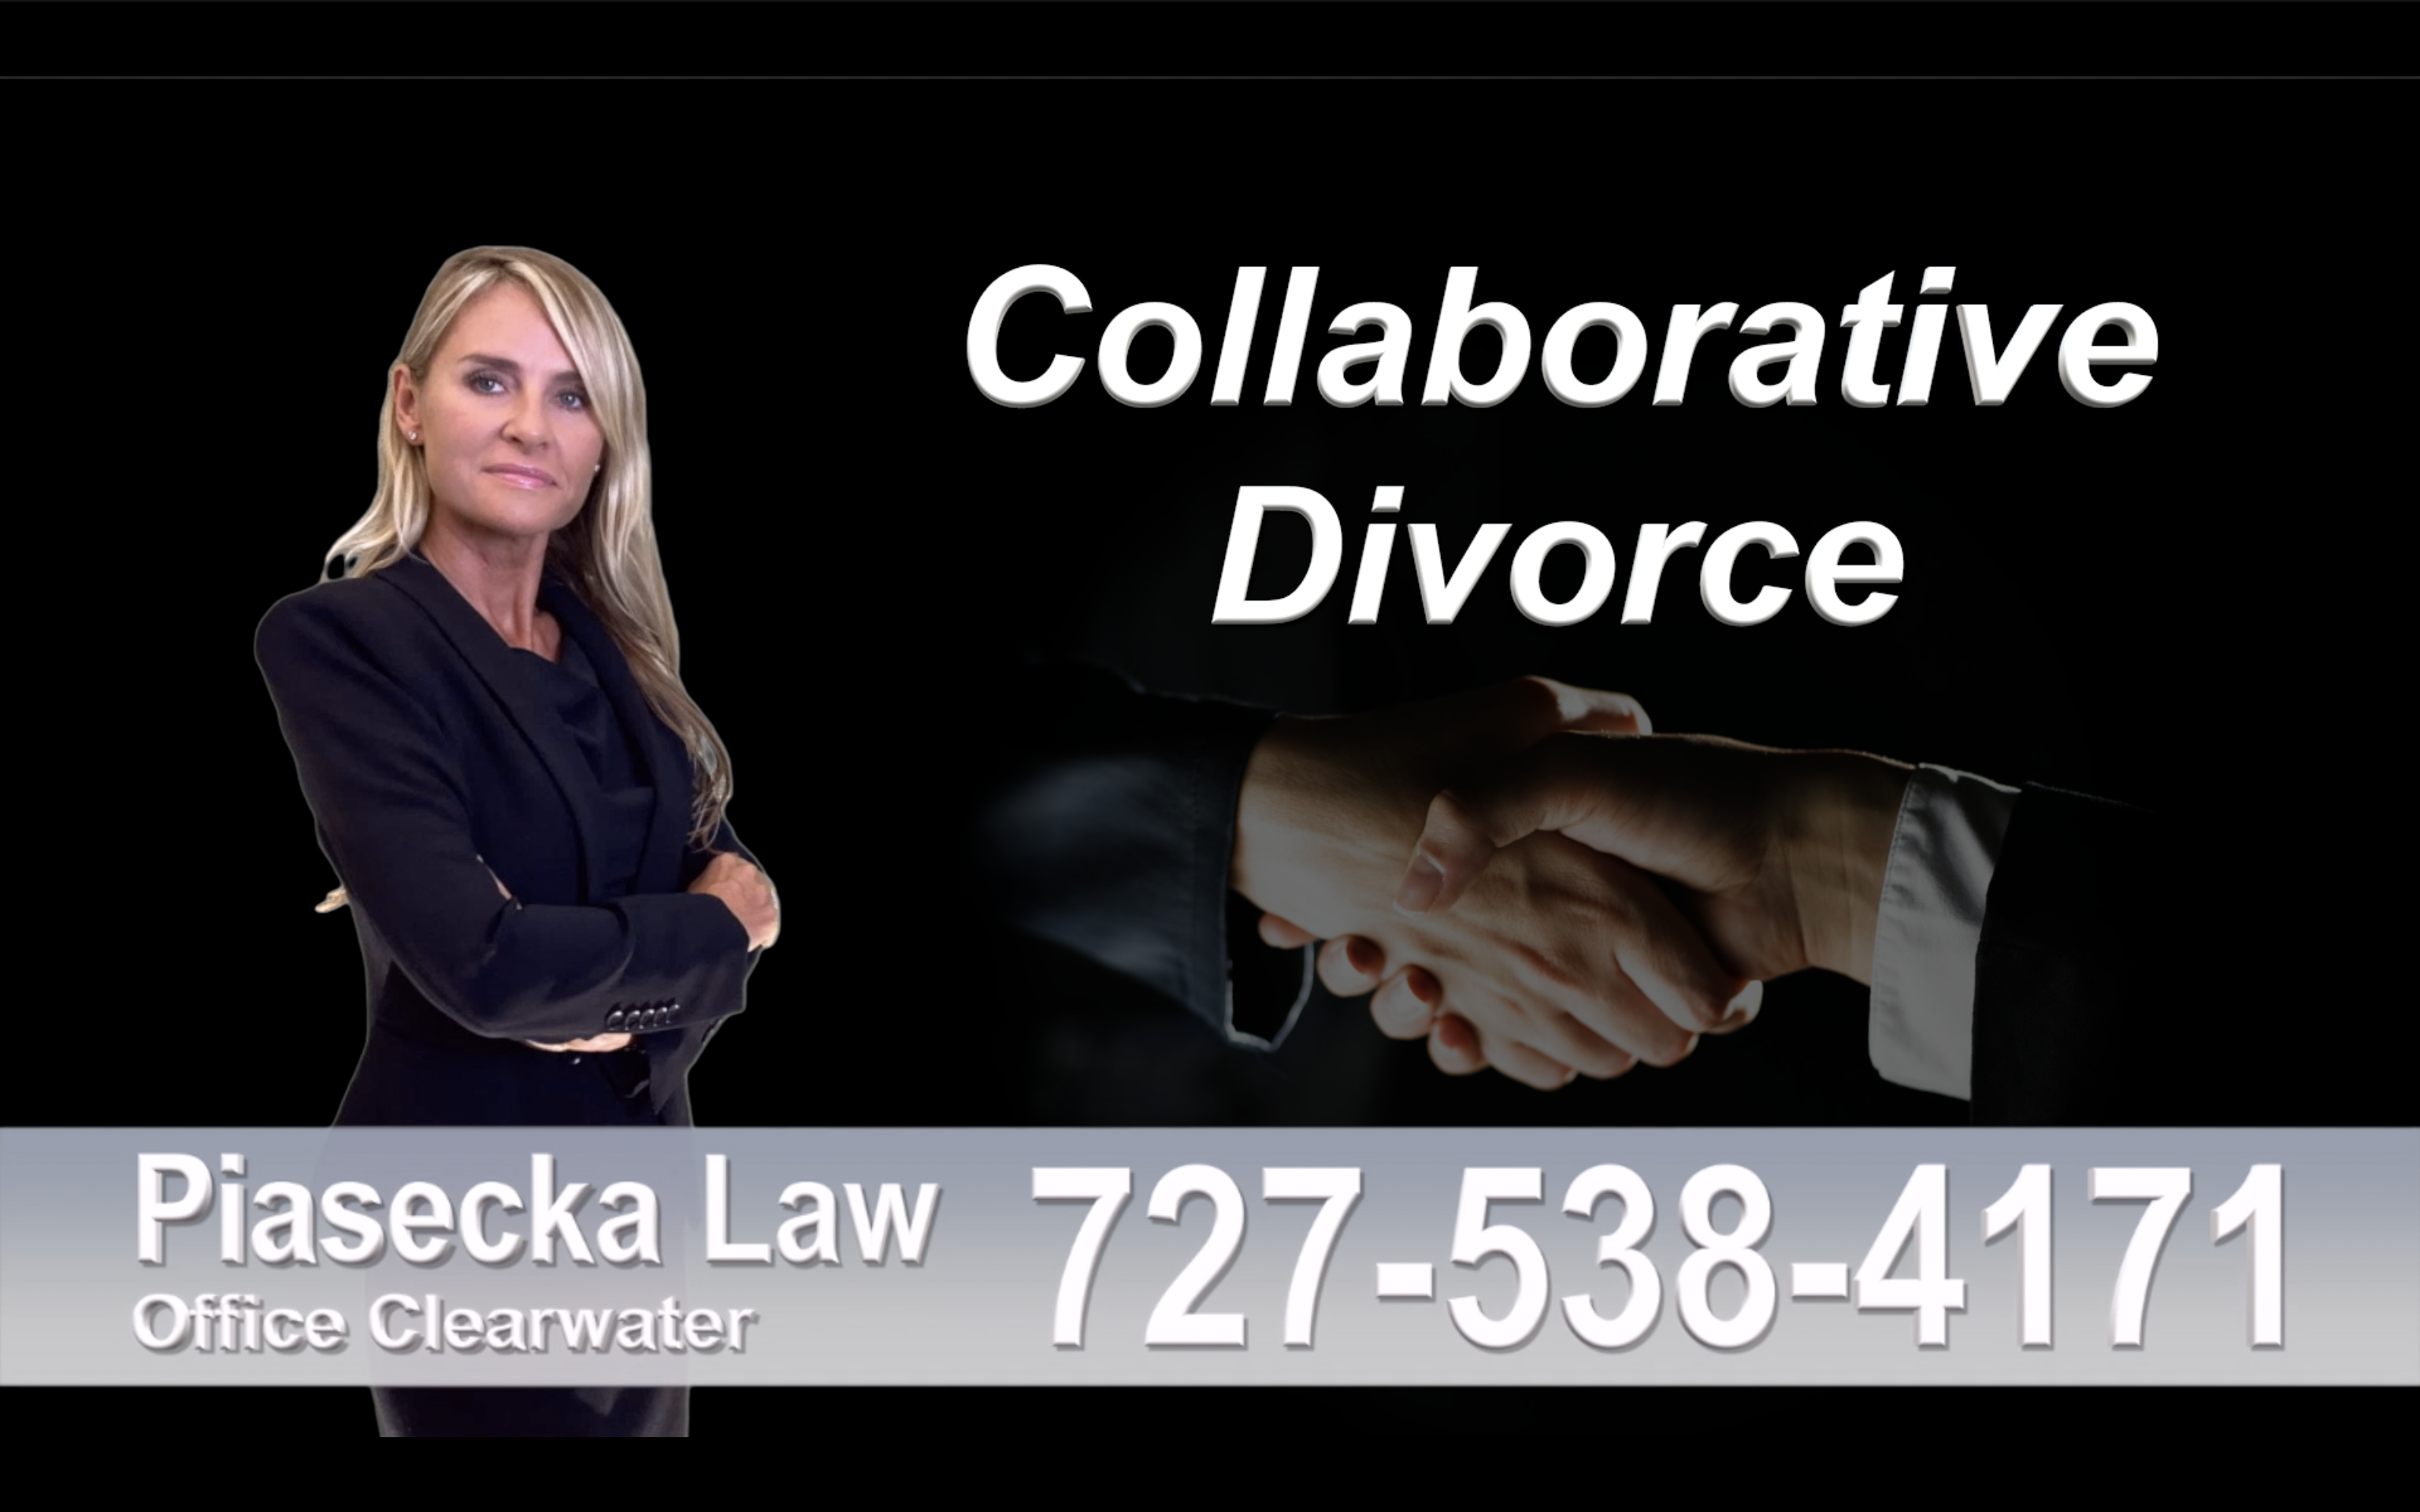 Naples Collaborative, Divorce, Attorney, Agnieszka, Piasecka, Prawnik, Rozwodowy, Rozwód, Adwokat, rozwodowy, Najlepszy, Best, Collaborative, Divorce, Lawyers